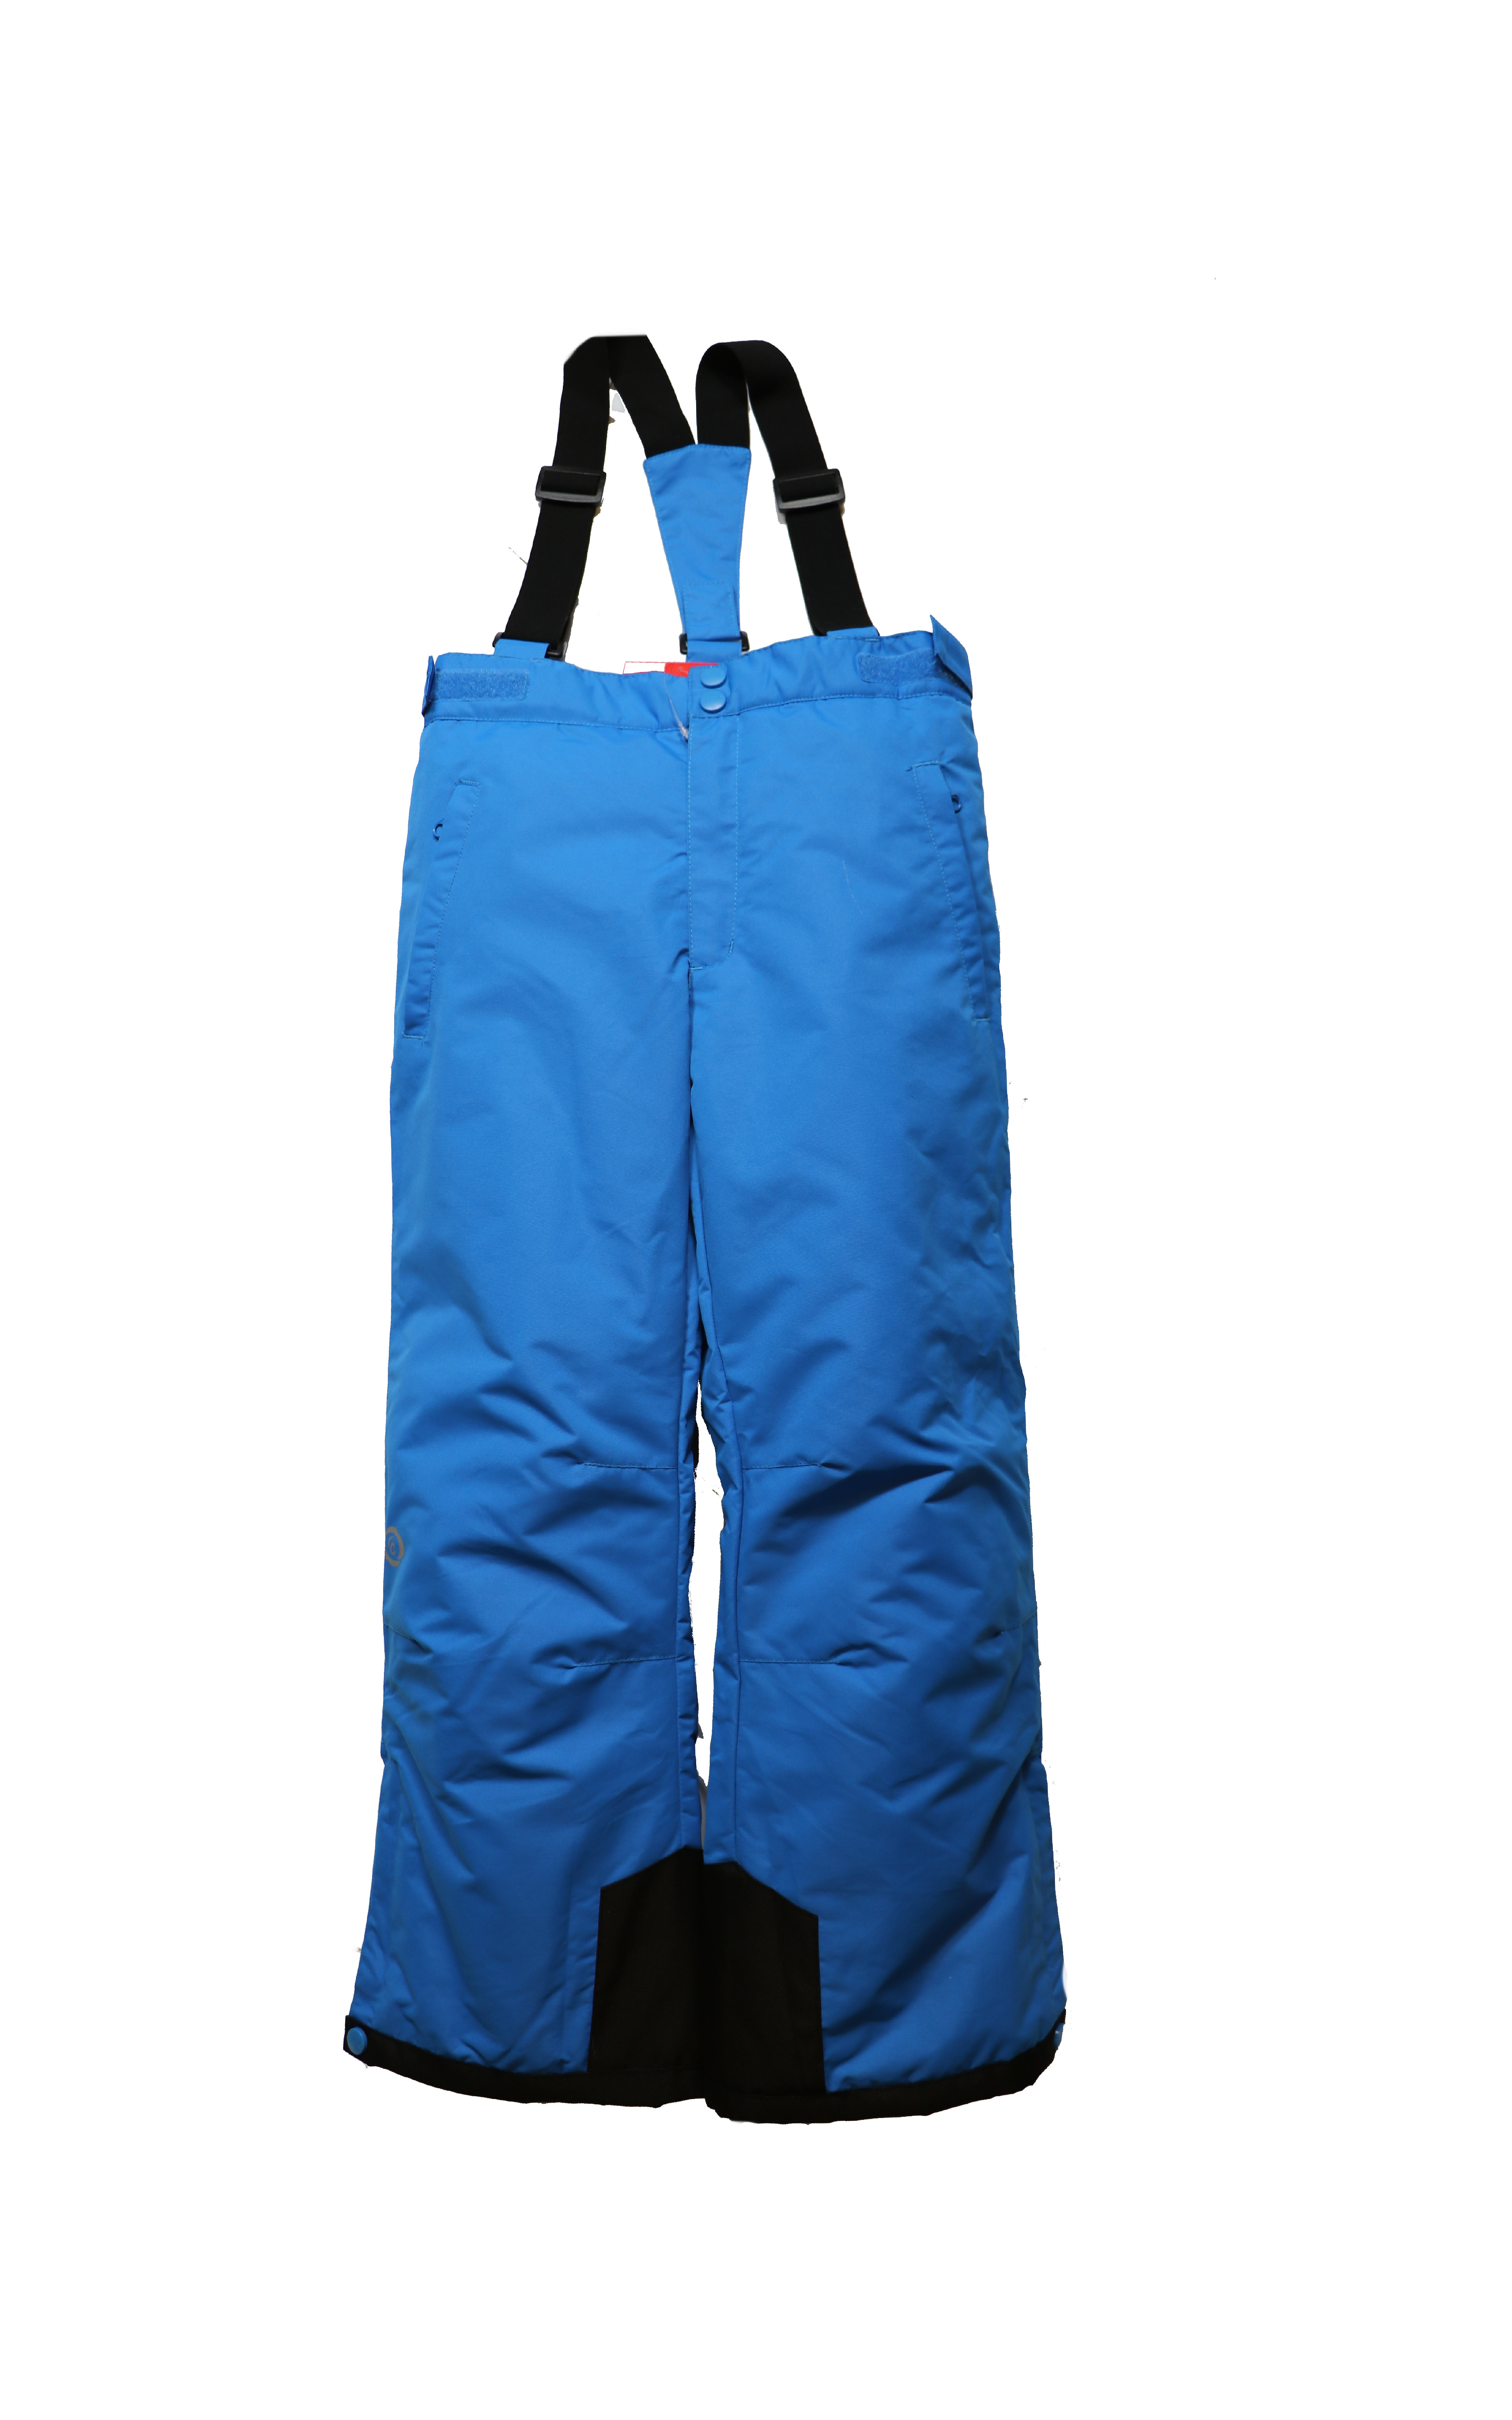 Dětské lyžařské kalhoty HB03-M2 modrá Barva: Modrá, Velikost: 134 - 140 cm